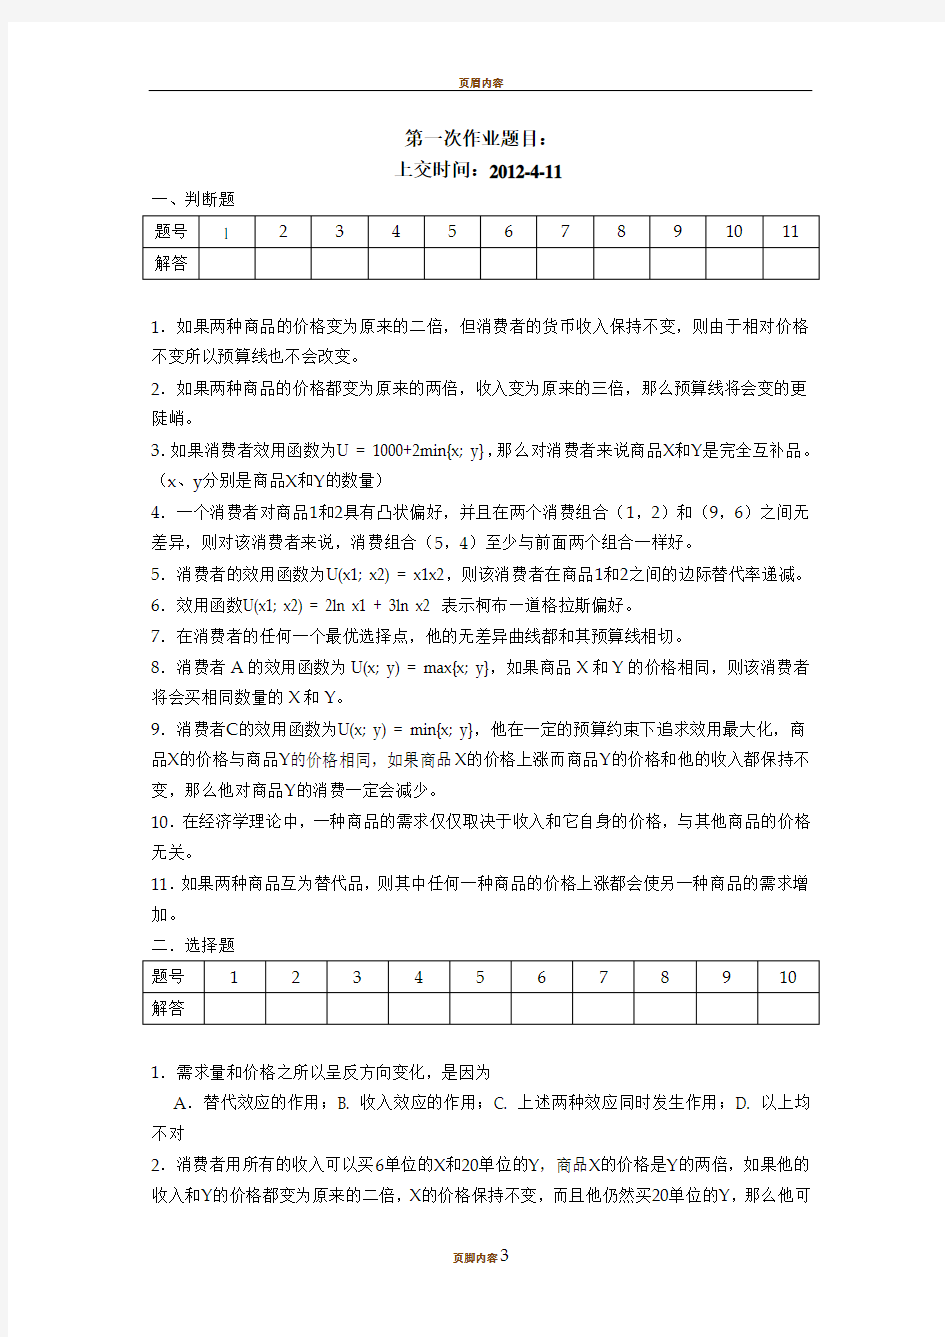 上海财经大学 微观经济学 第一次作业